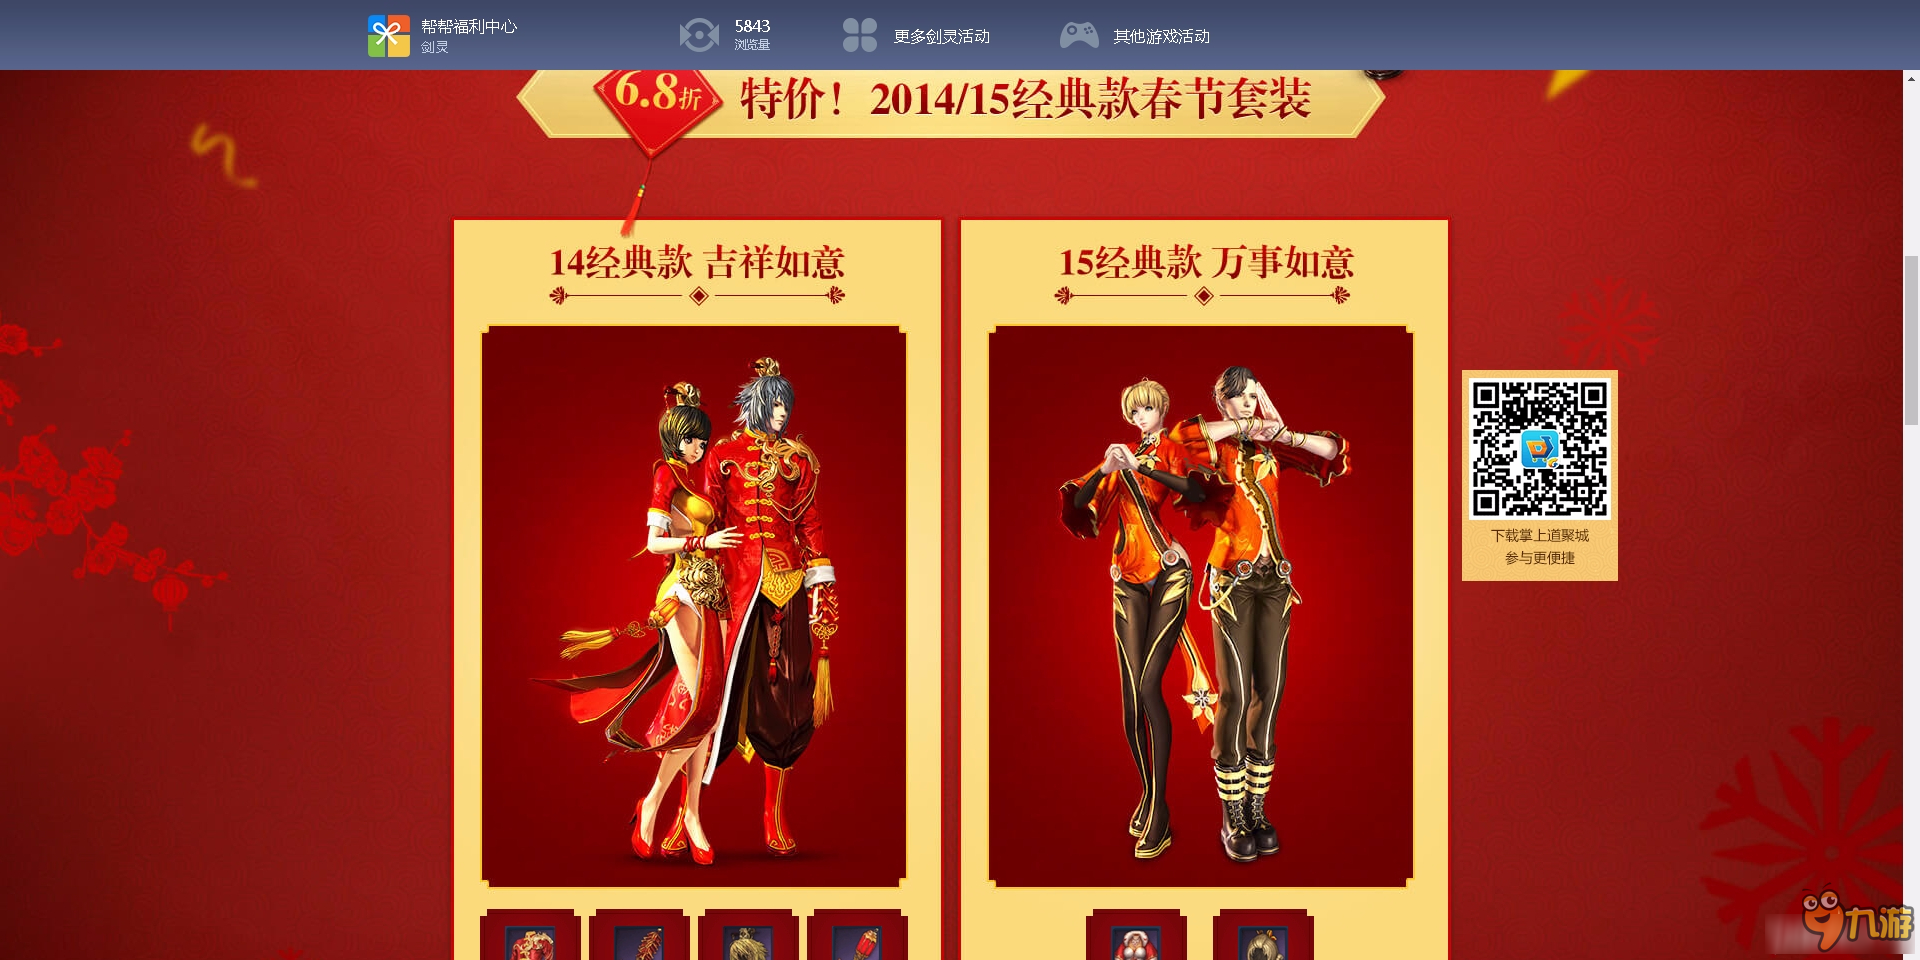 剑灵春节时装特卖会活动介绍 剑灵春节时装特卖会活动网址